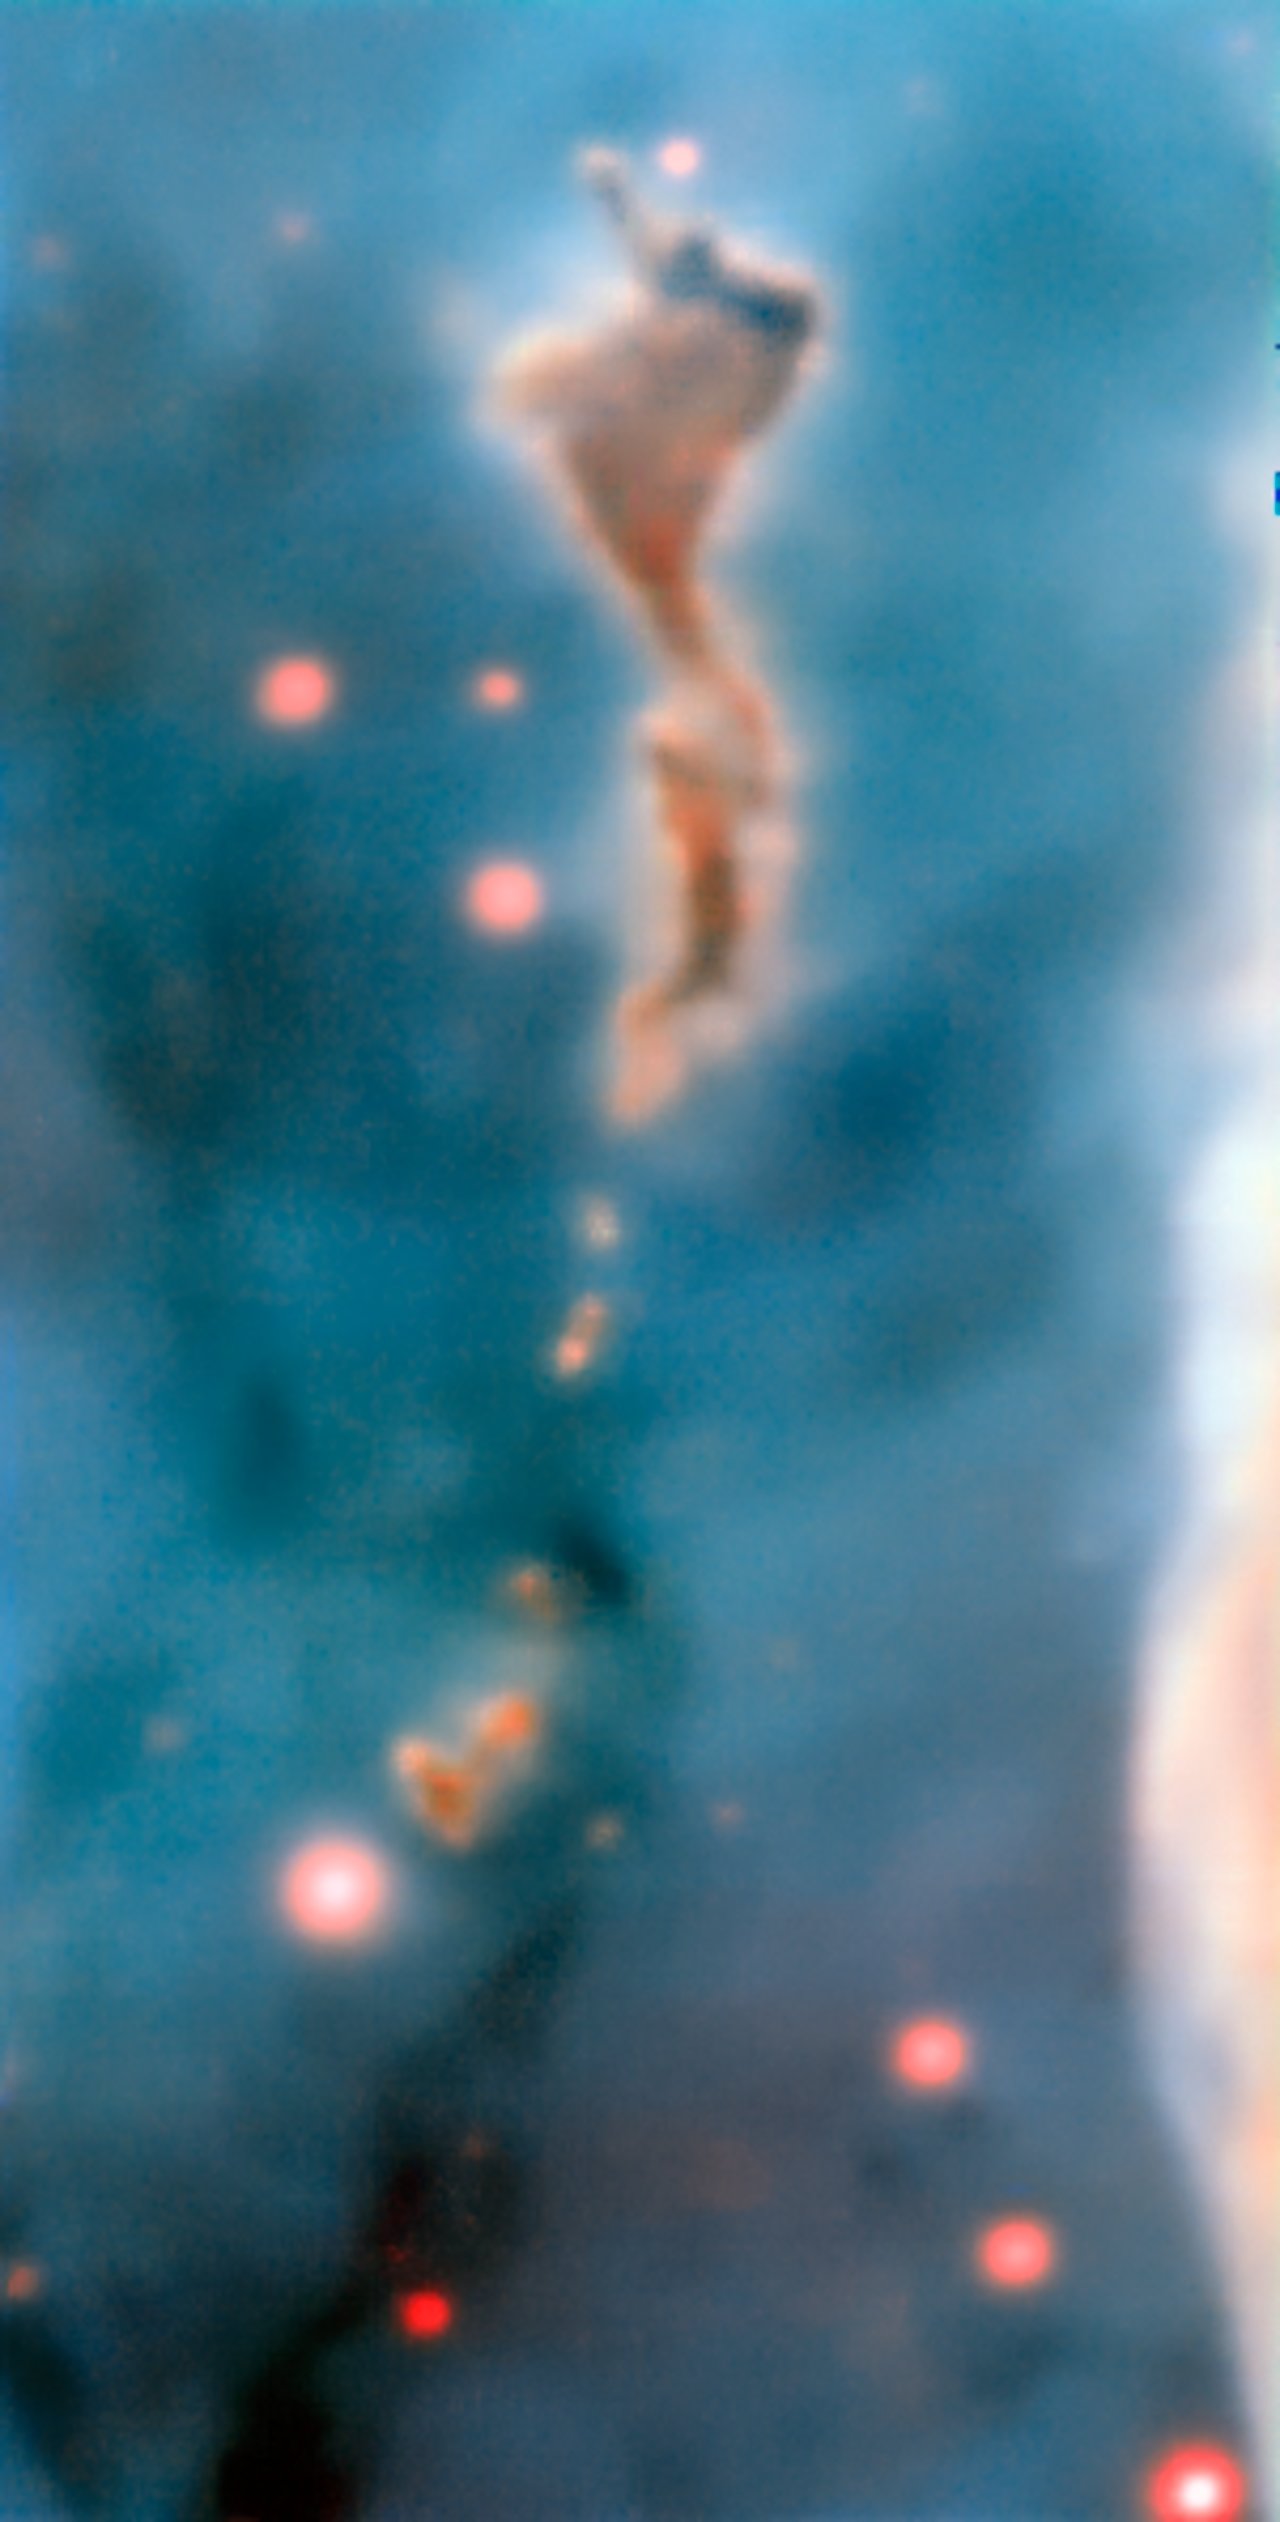 Region R37 in the Carina Nebula